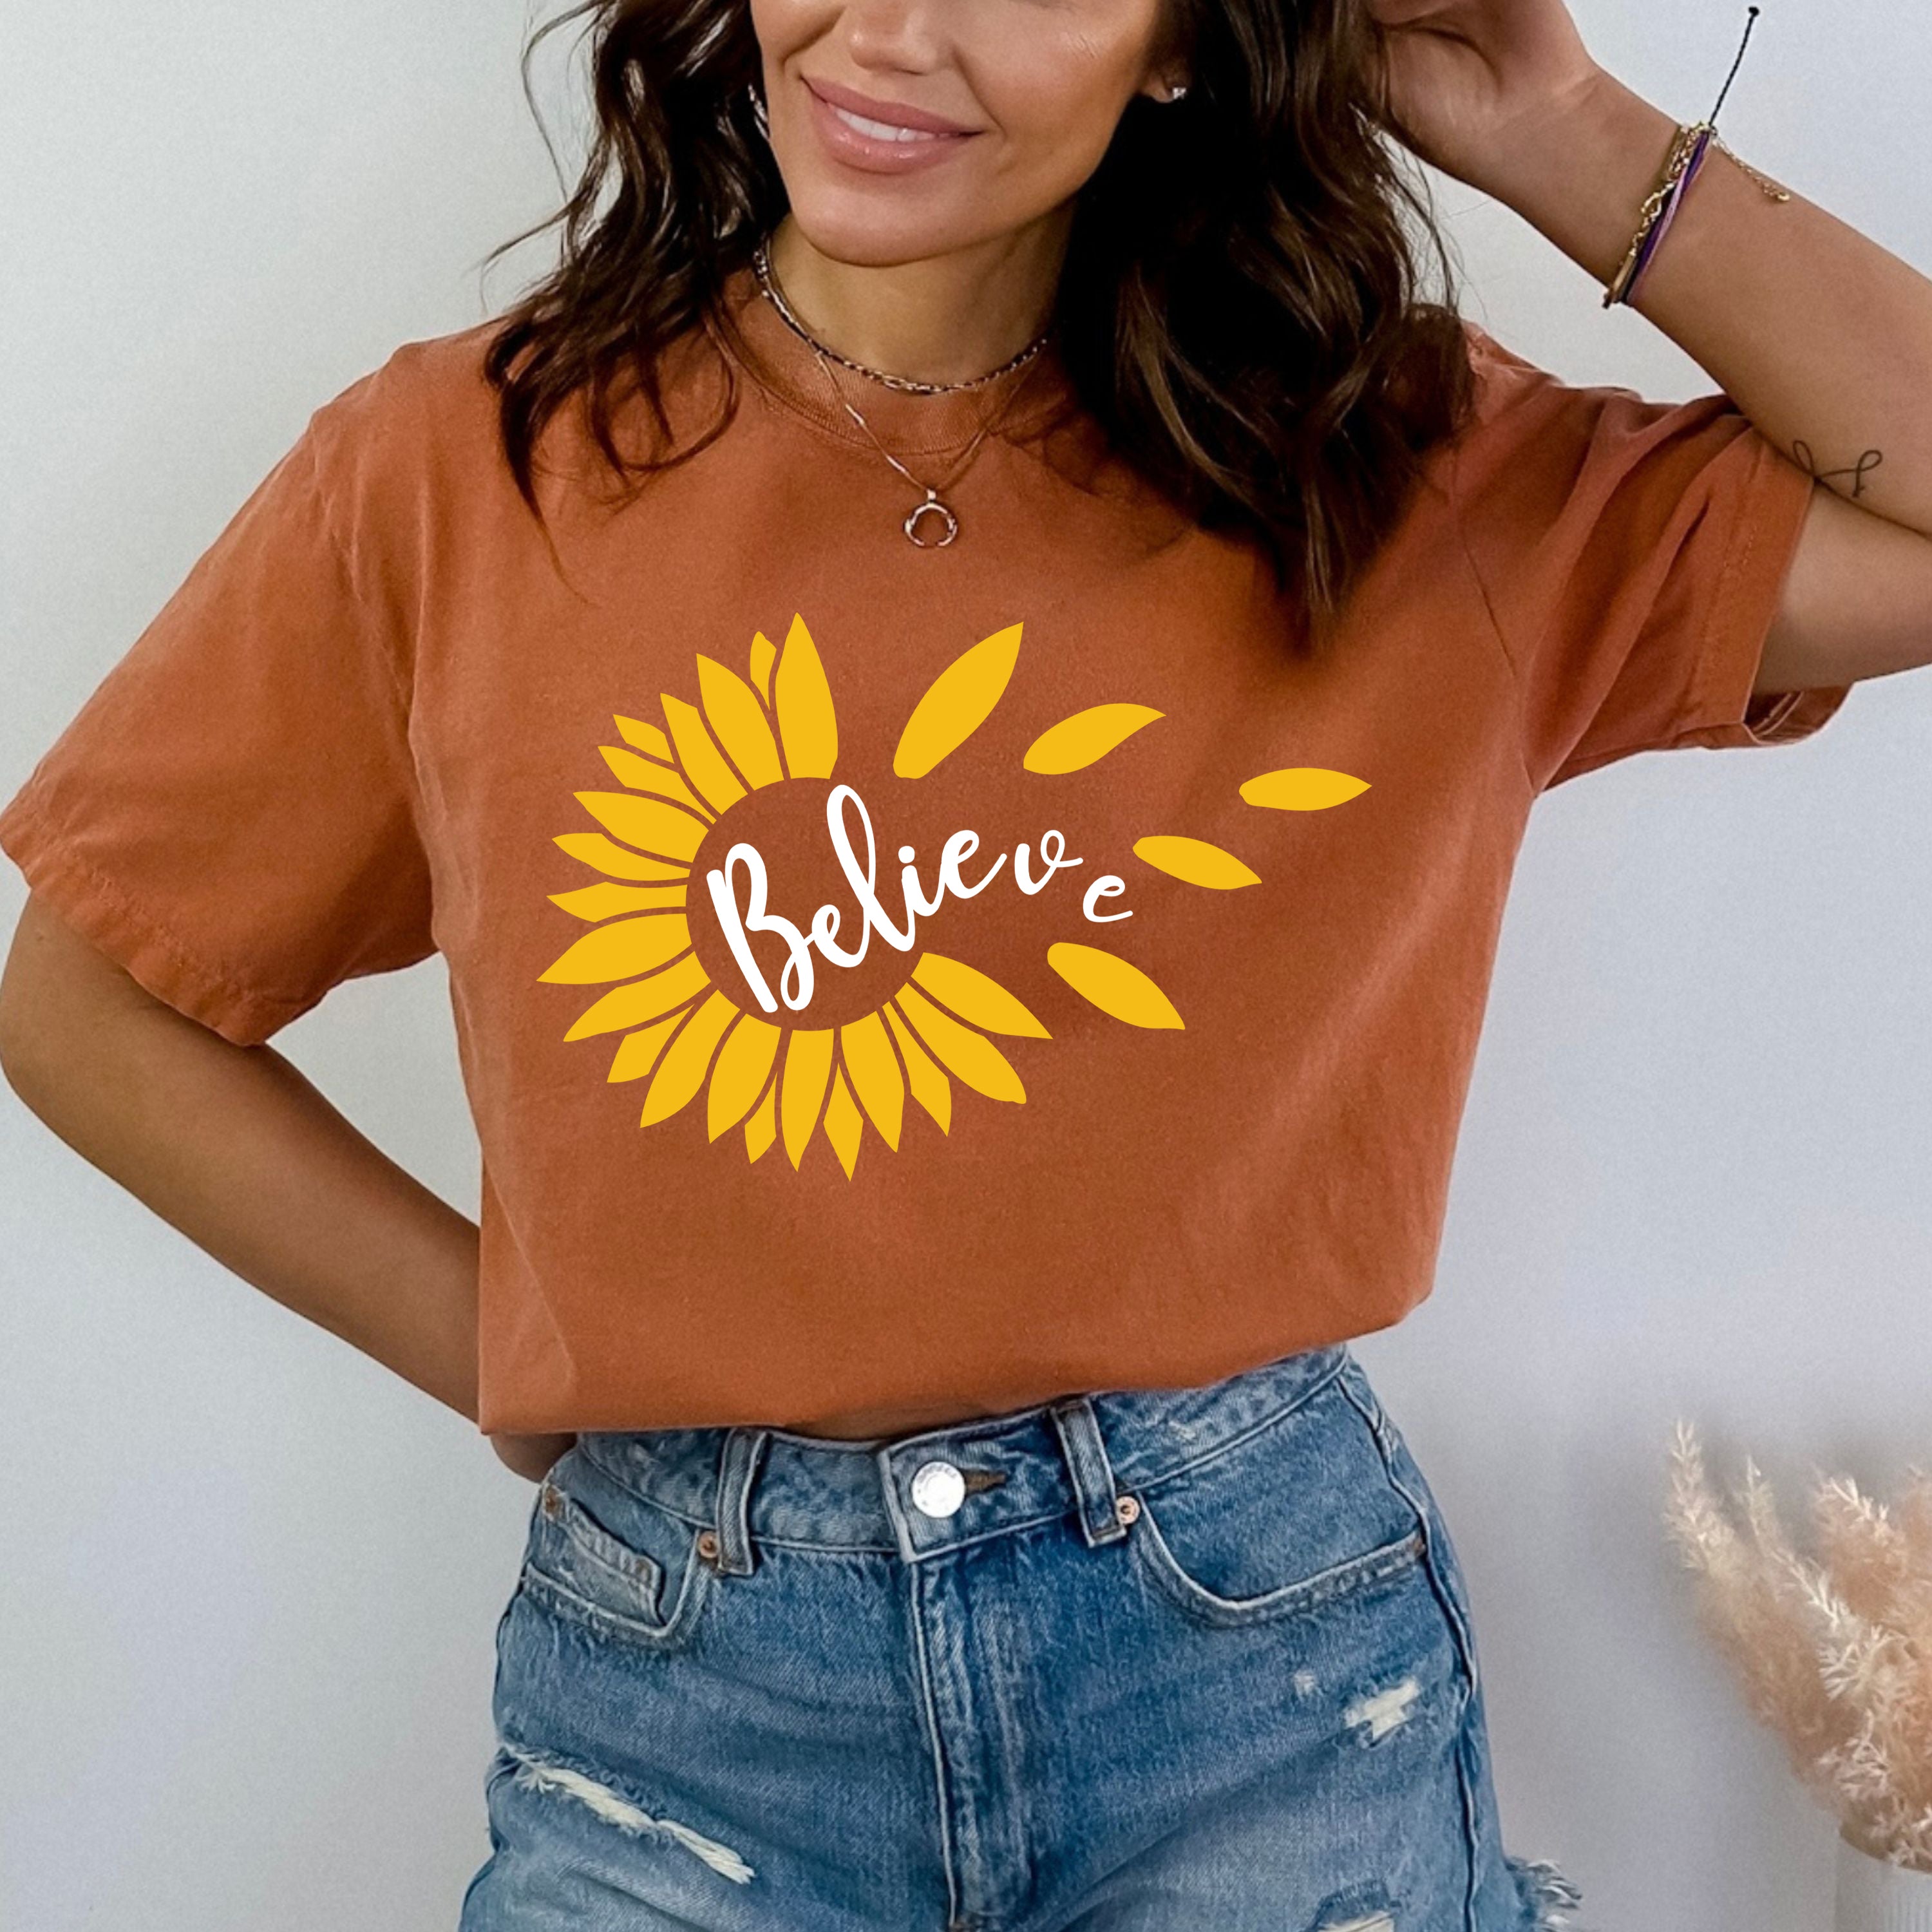 Believe: Sunflower - Bella Canvas